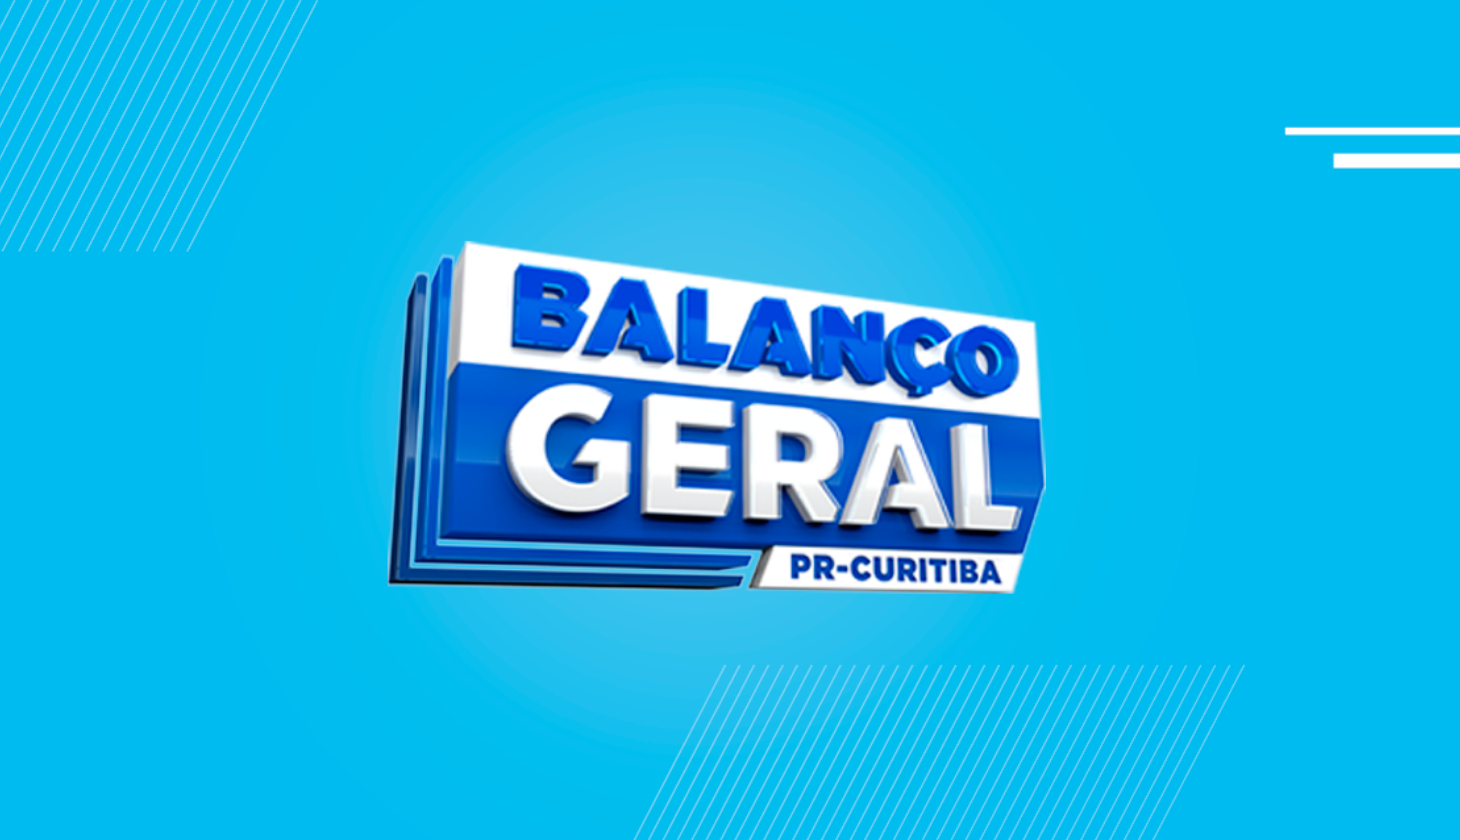 Balanço Geral Curitiba